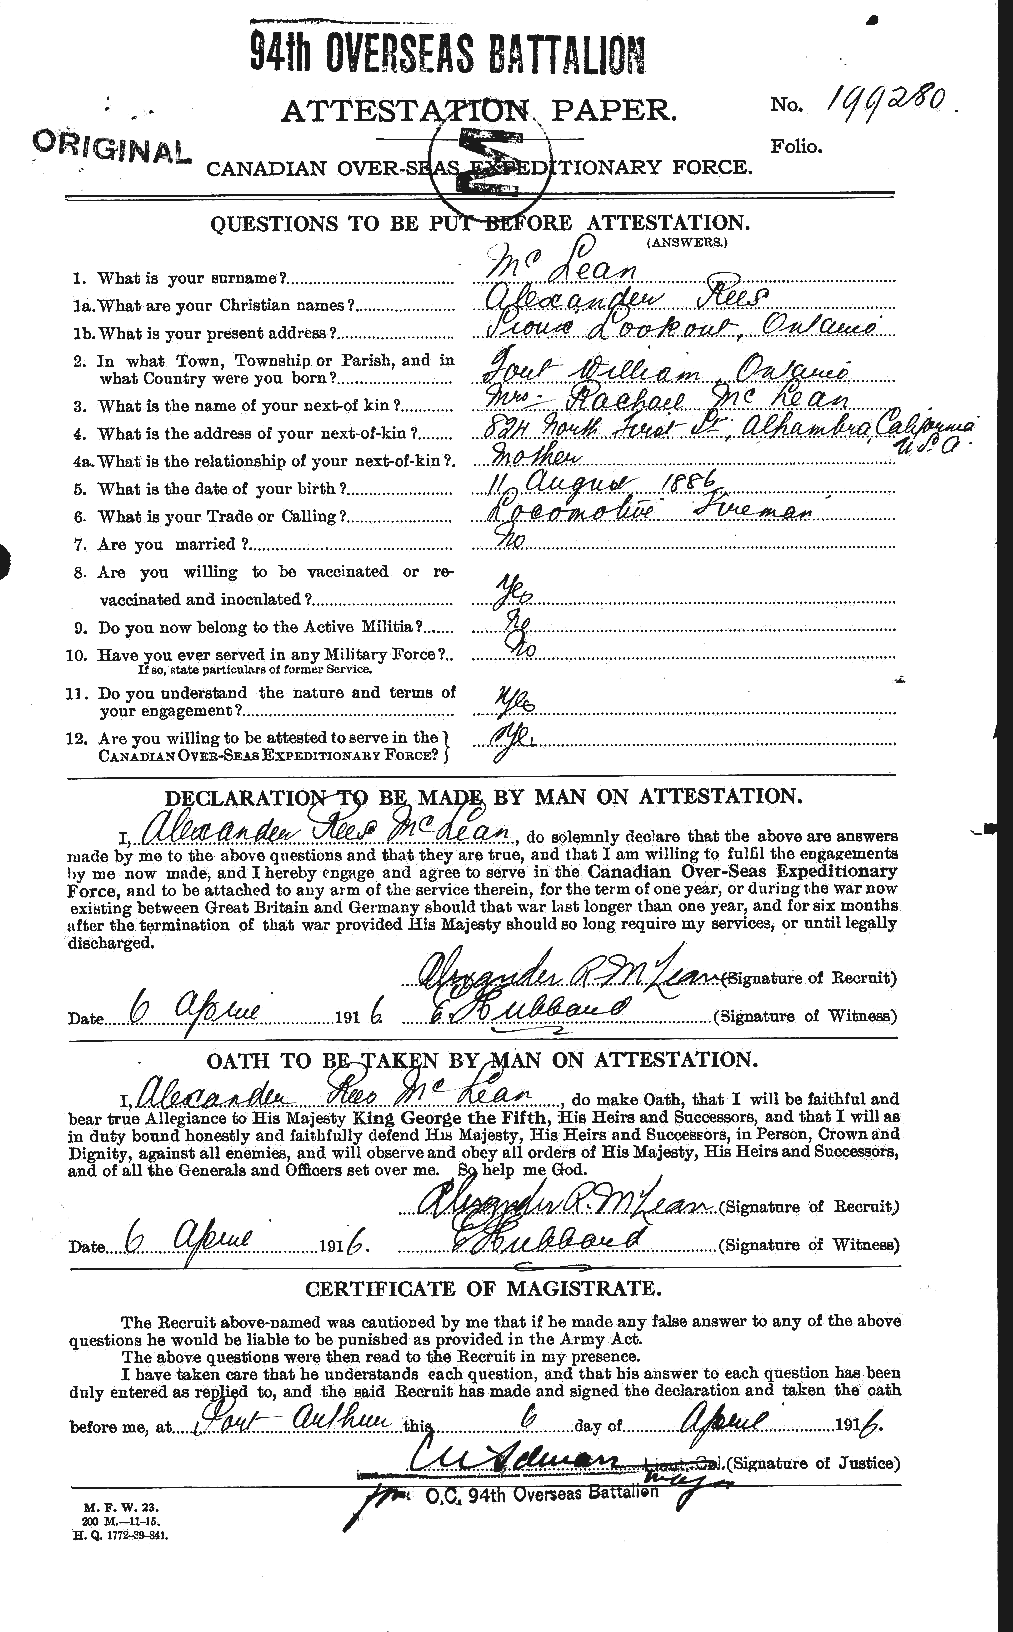 Dossiers du Personnel de la Première Guerre mondiale - CEC 532766a